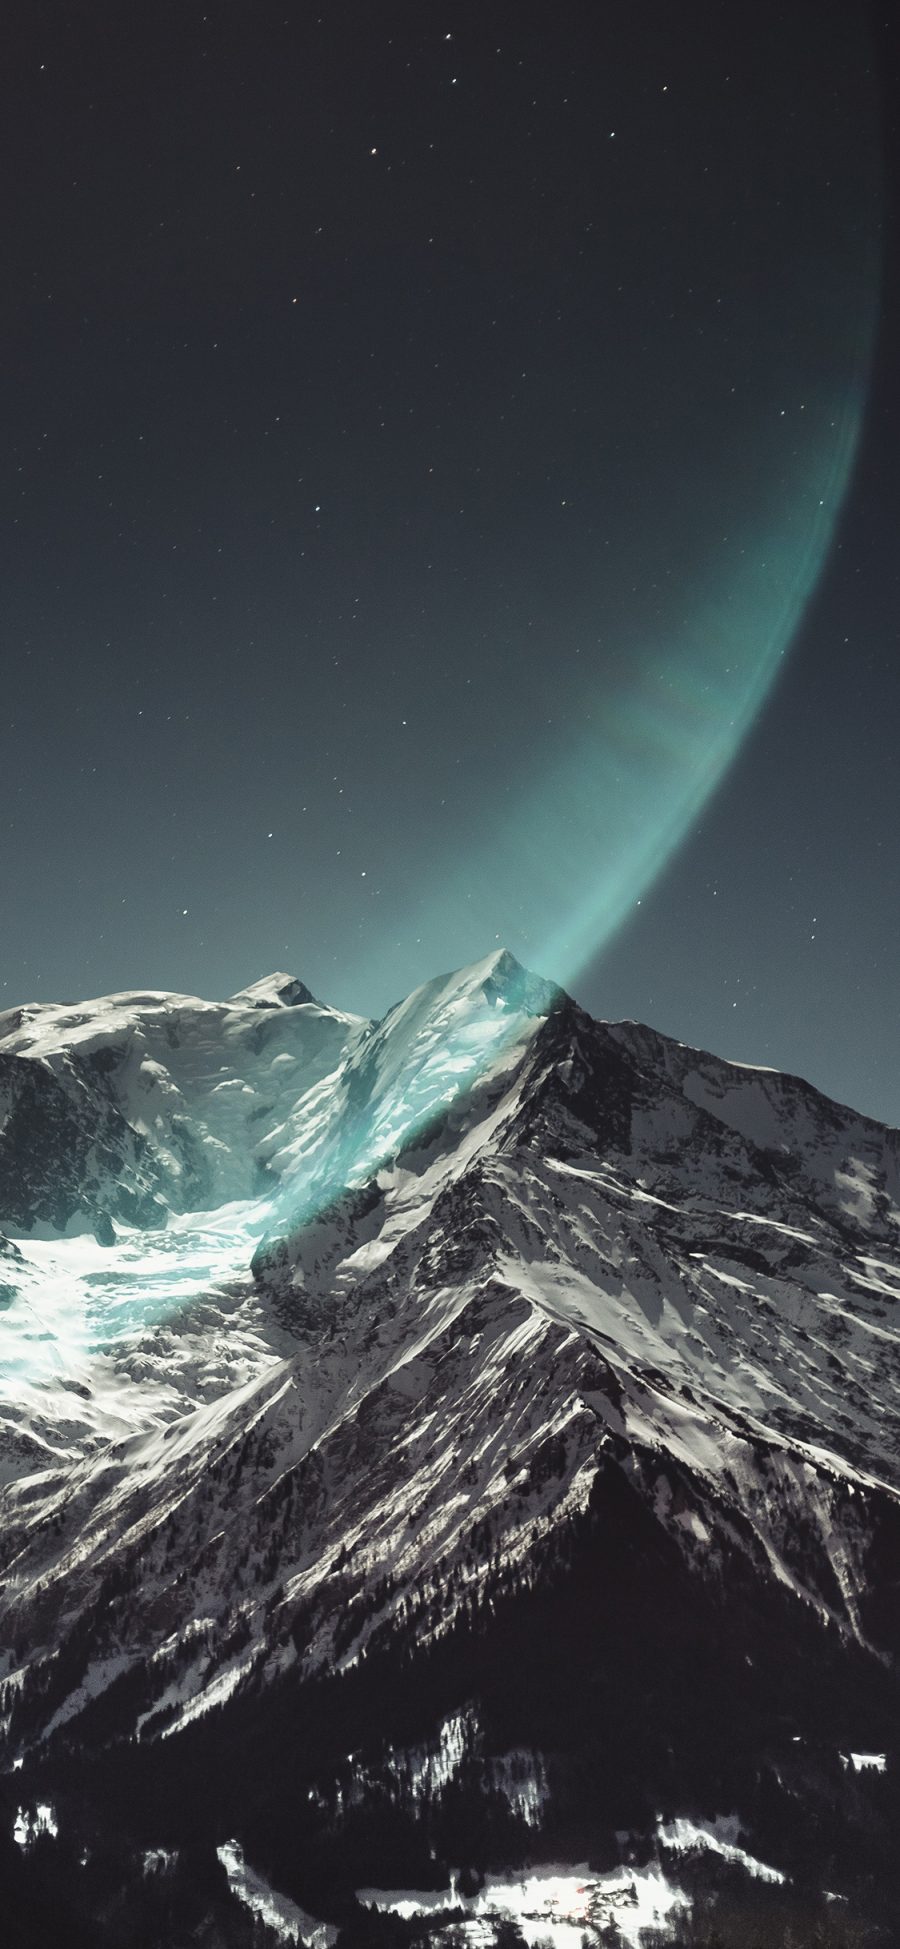 [2436×1125]山峰 白雪覆盖 星空夜景 光圈 苹果手机壁纸图片